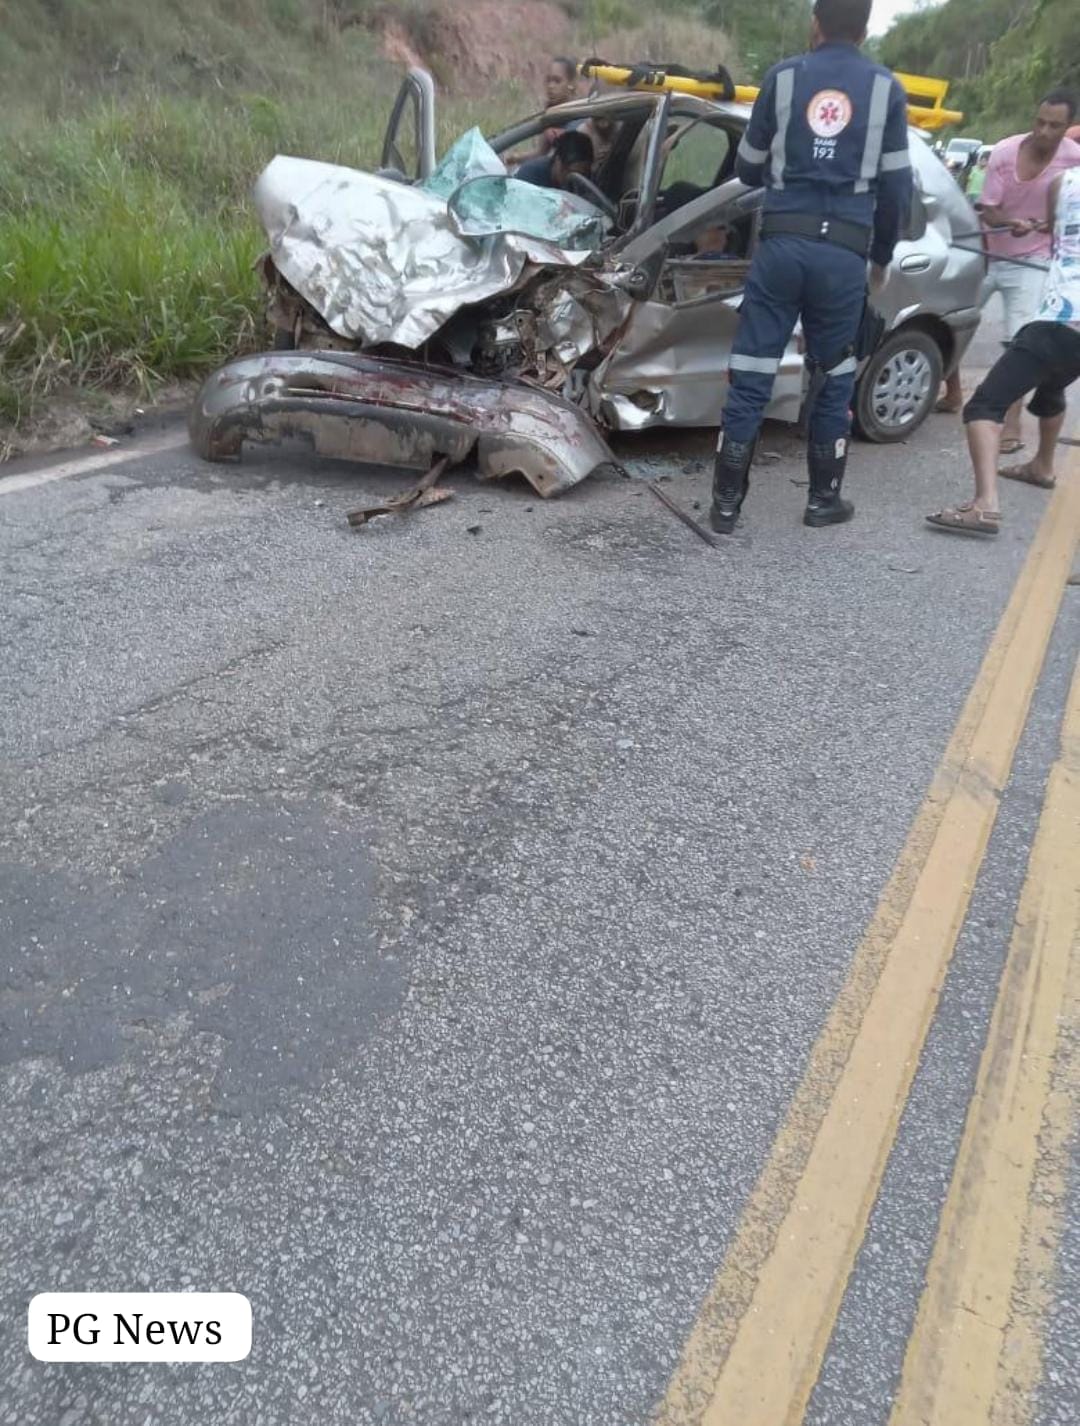 Tragédia: Três pessoas morreram em acidente entre 2 carros próximo a Malacacheta neste domingo